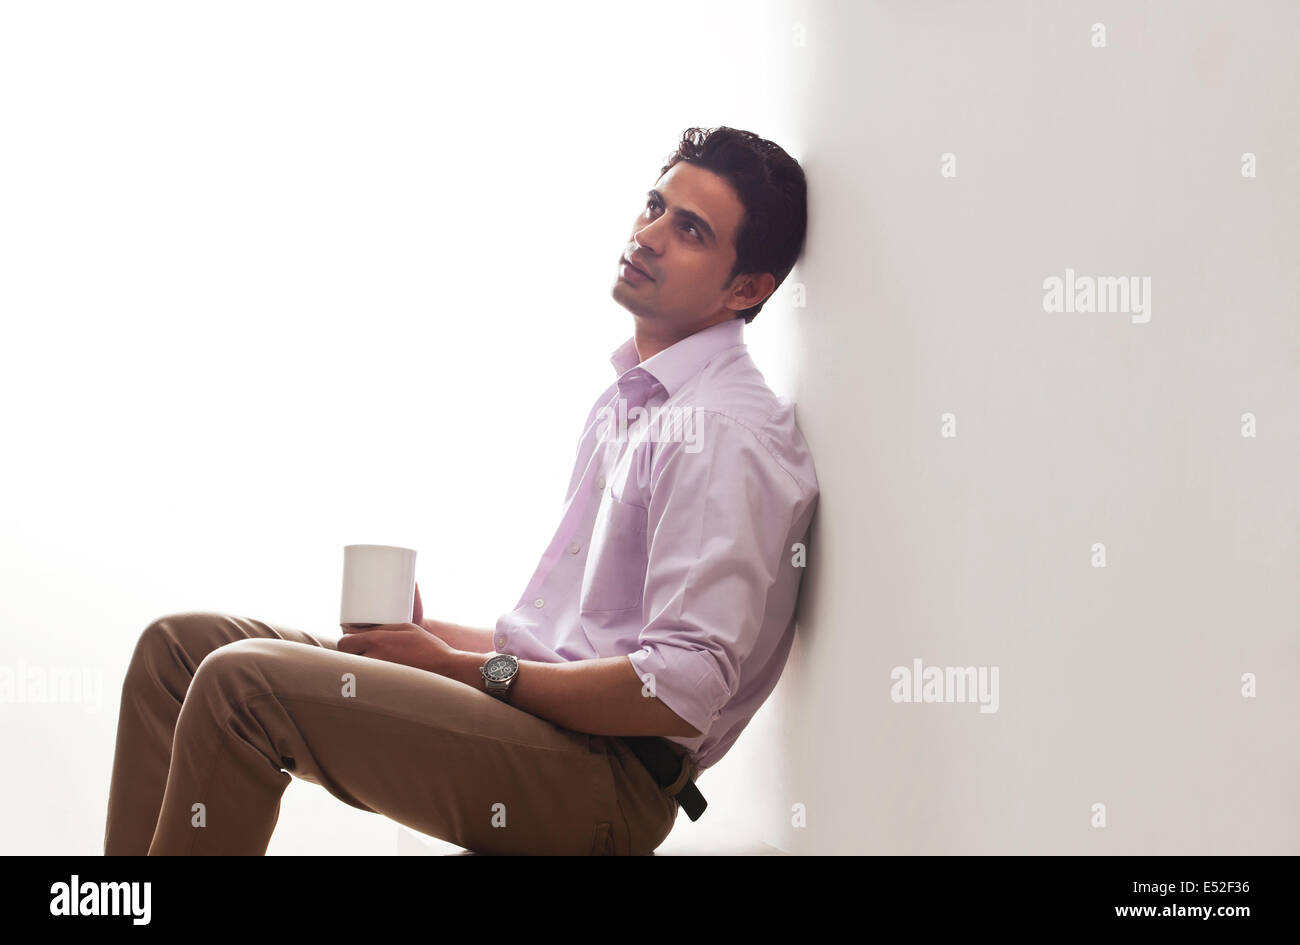 Homme tenant une tasse de thé leaning against wall Banque D'Images